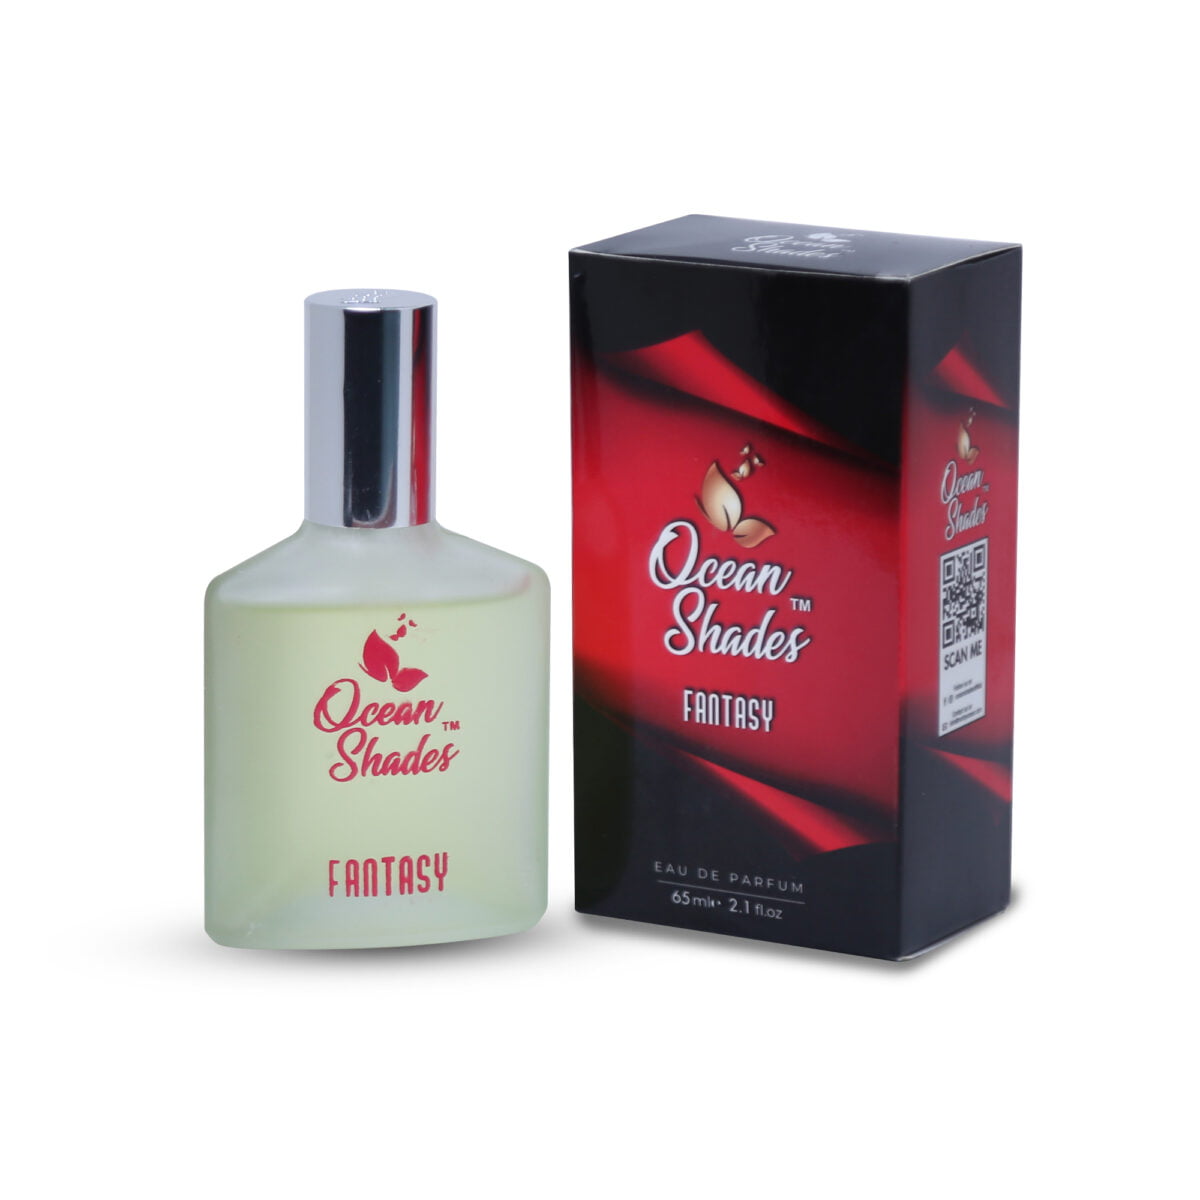 fantasy pocket Perfume 65 ml or 35ml for men & women